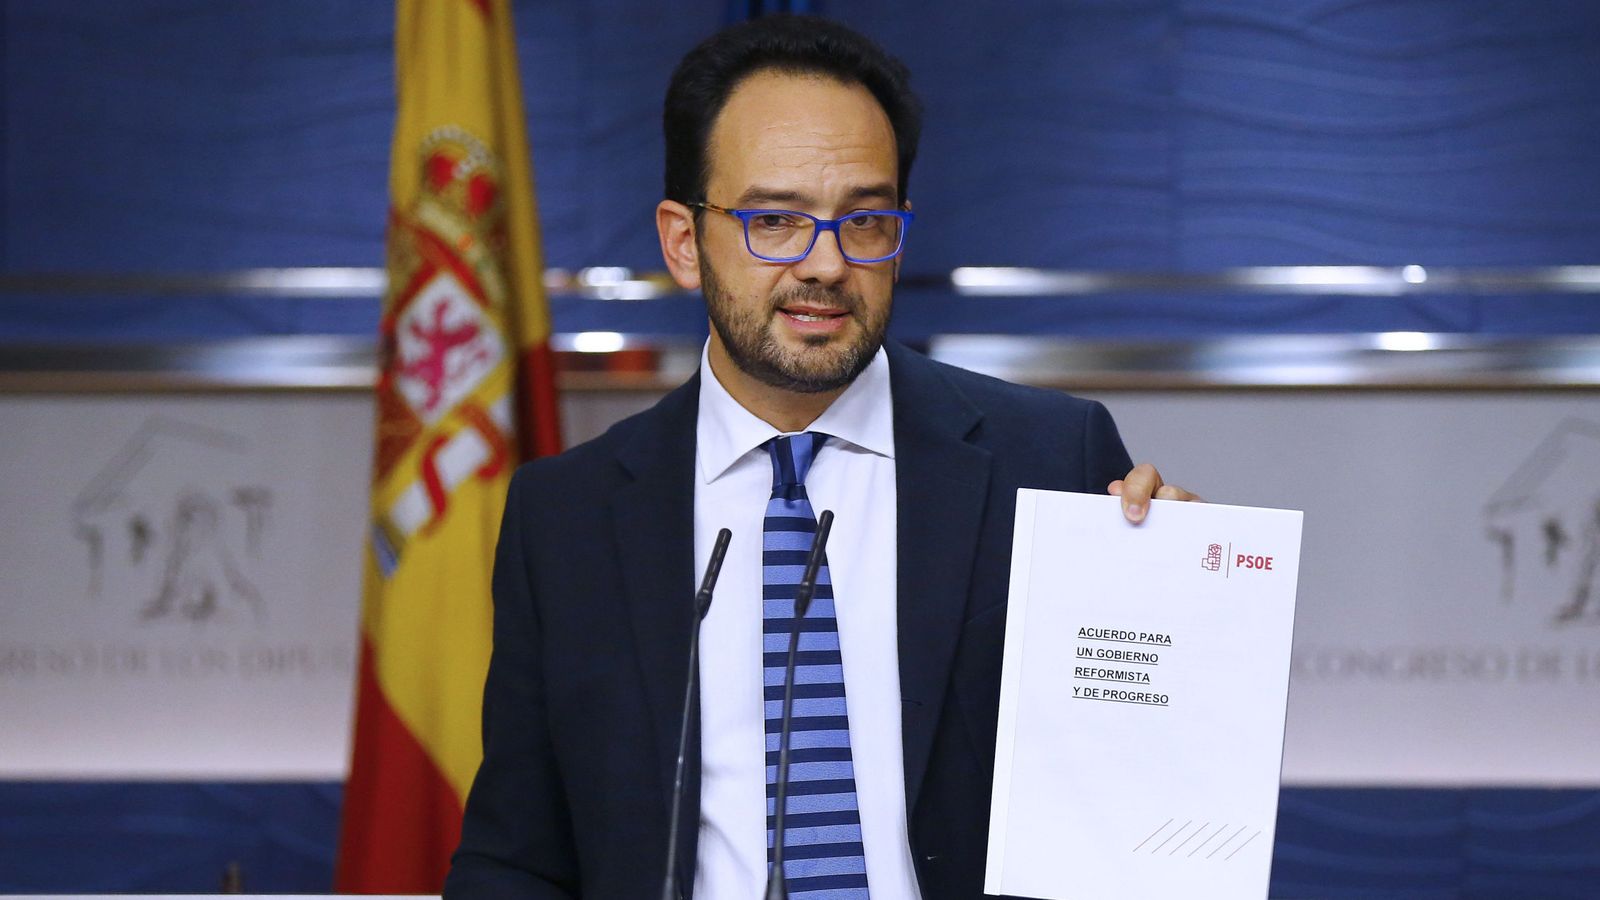 Foto: El portavoz del grupo socialista, Antonio Hernando, muestra el documento tras acusar a Podemos de mentir sobre su contenido. (EFE)